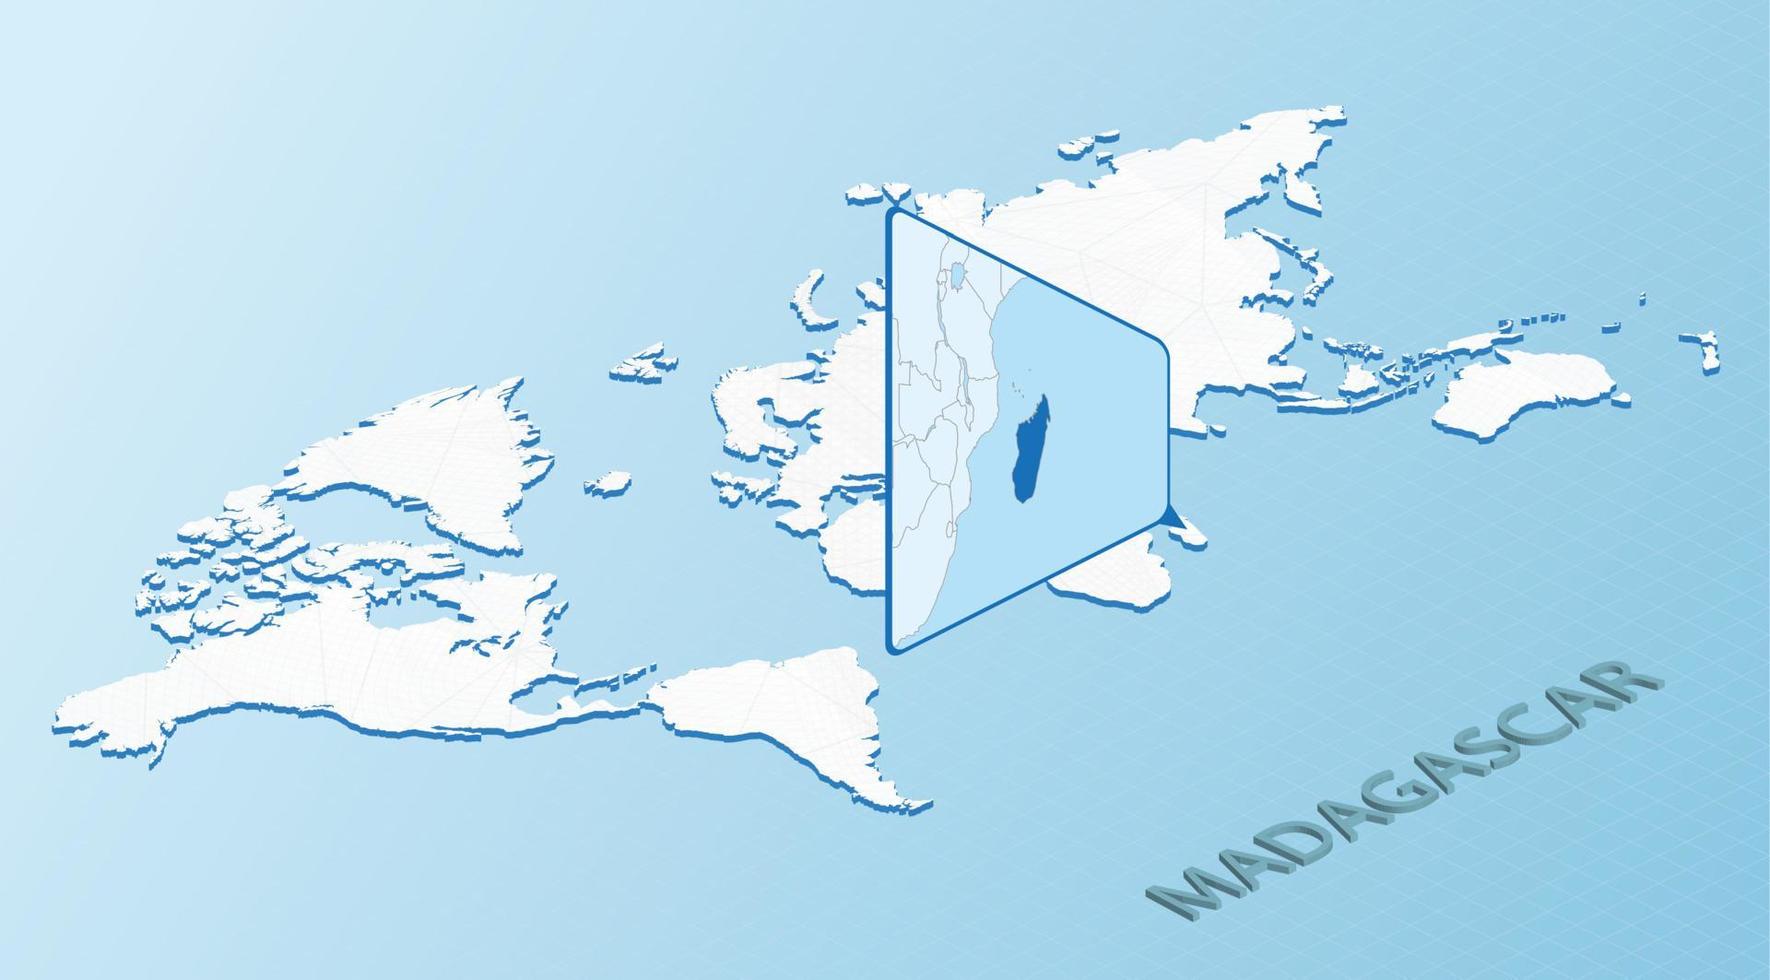 wereld kaart in isometrische stijl met gedetailleerd kaart van Madagascar. licht blauw Madagascar kaart met abstract wereld kaart. vector